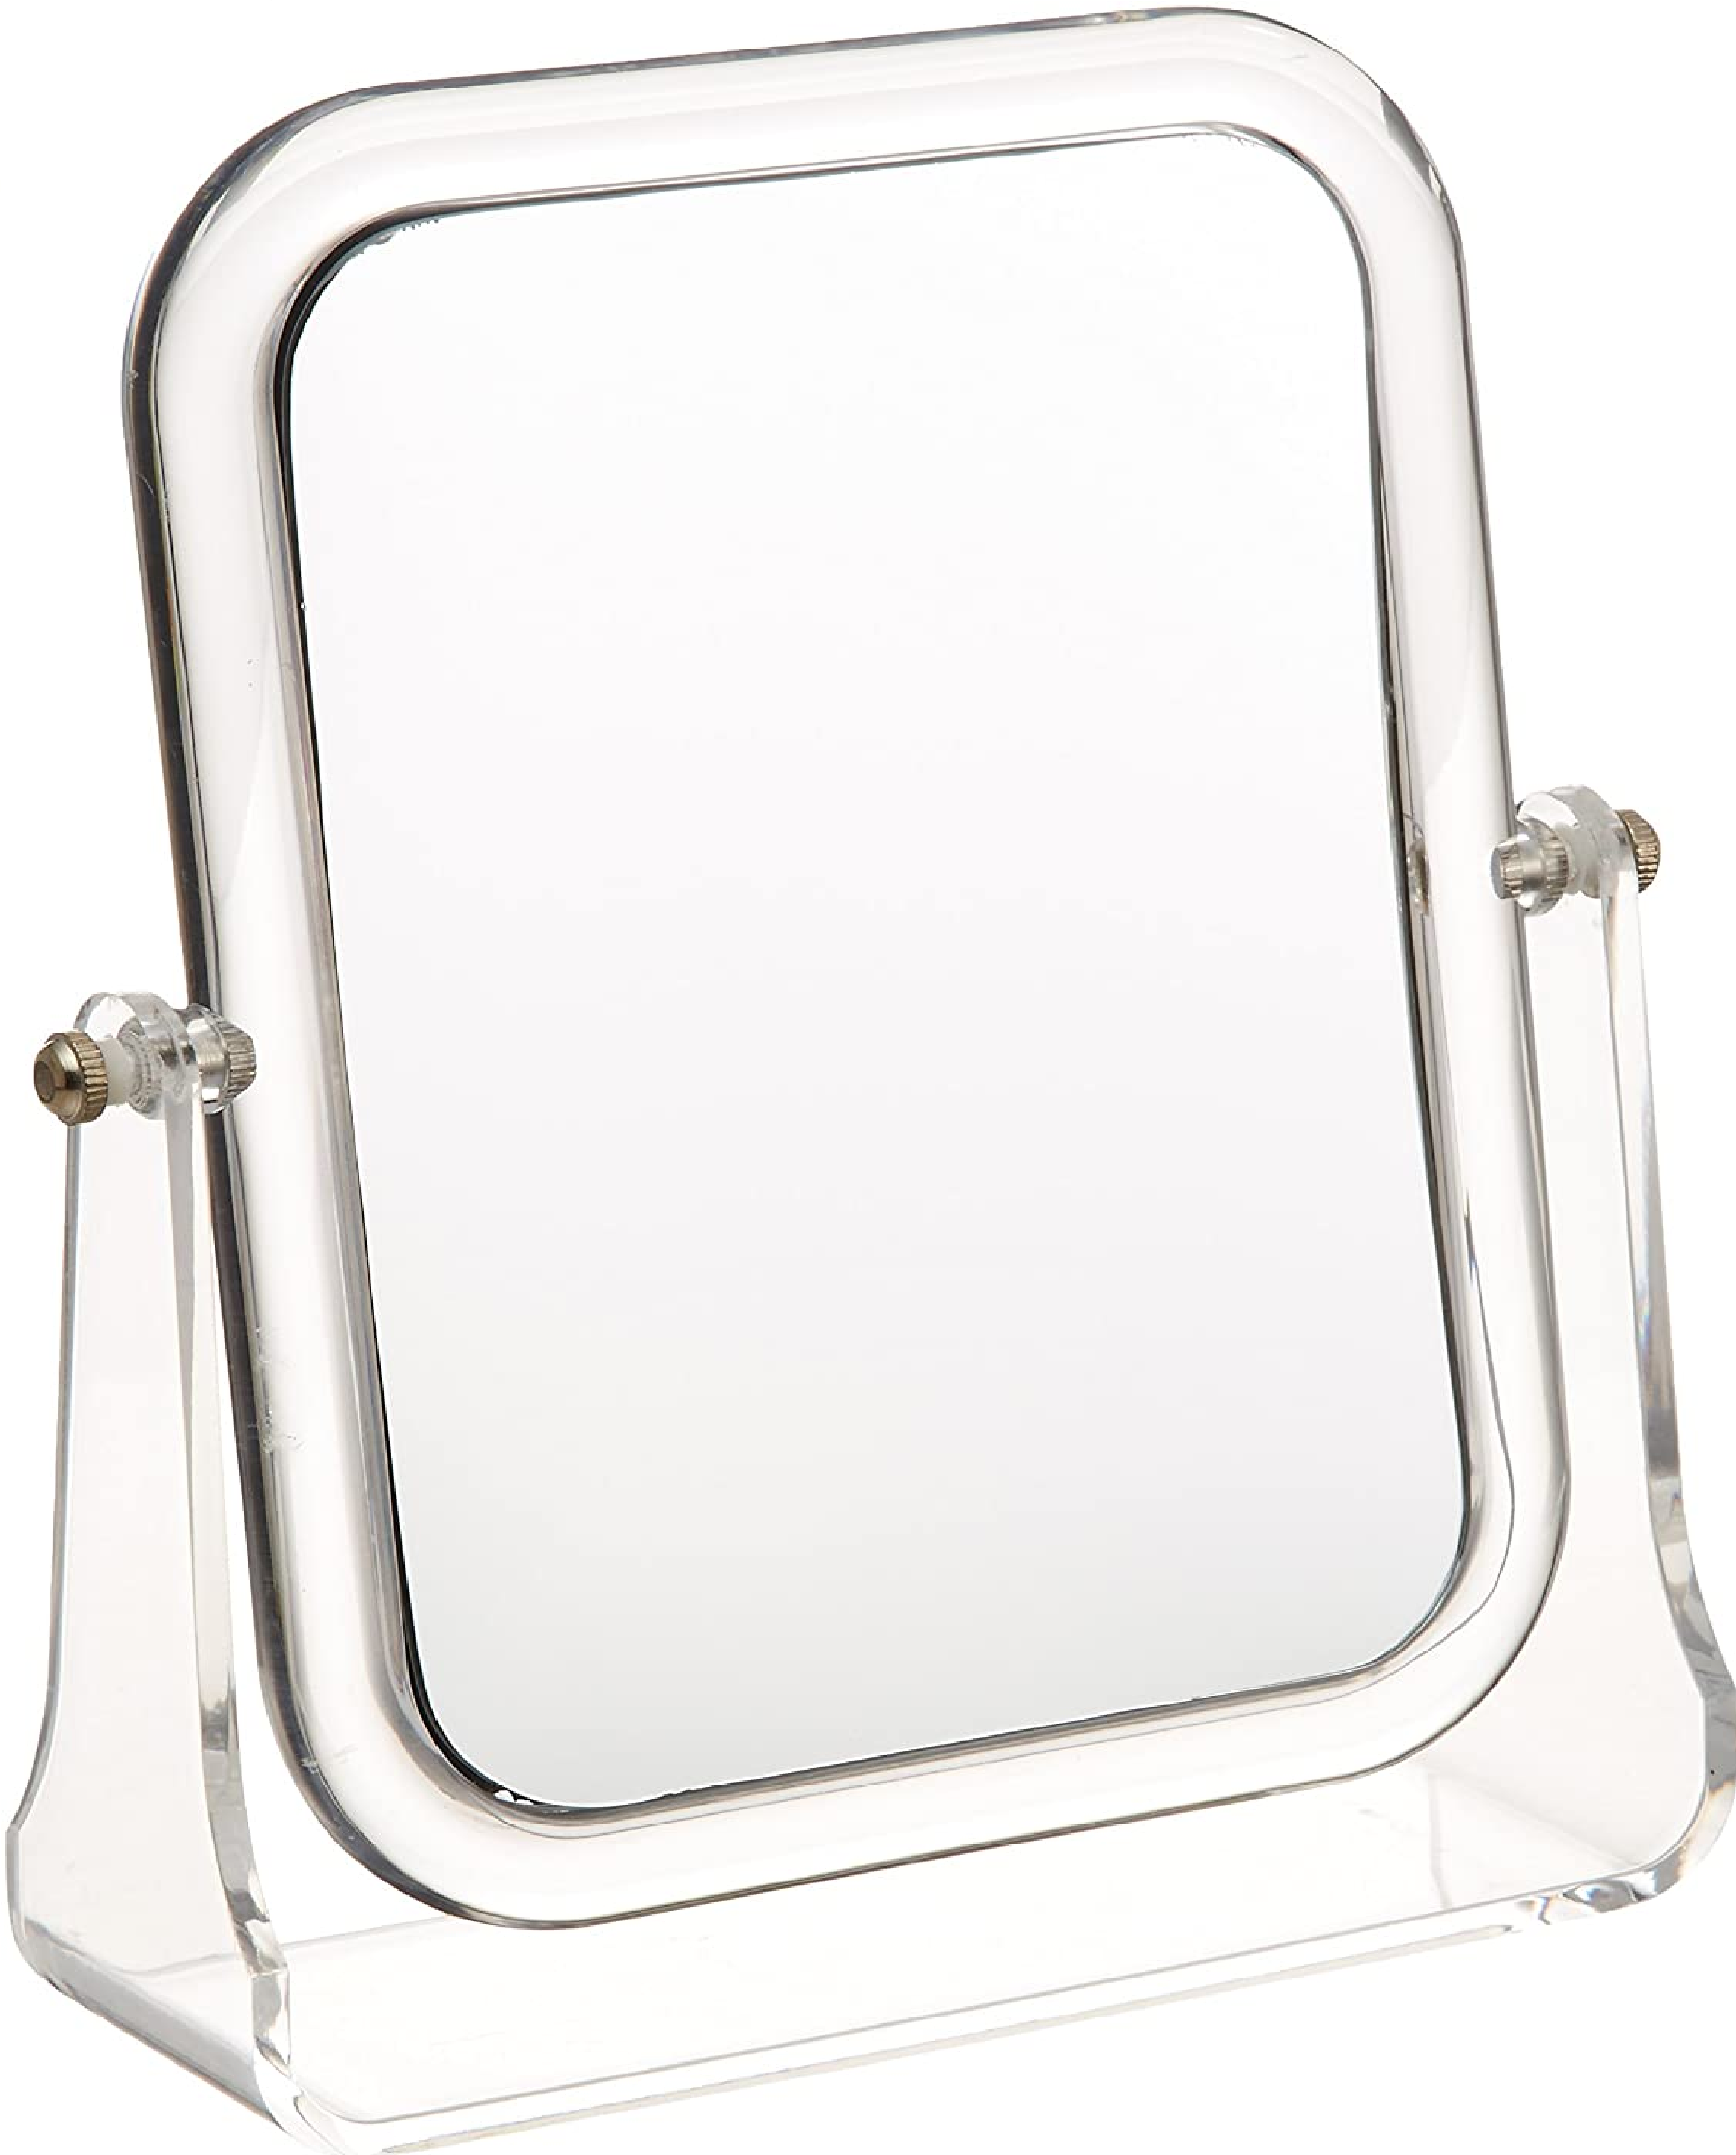 Kosmetik-Standspiegel Noci - klappbar, 300% Vergrößerung, Kunststoff - Acryl, 18 x 21 x 5.5 cm, Transparent